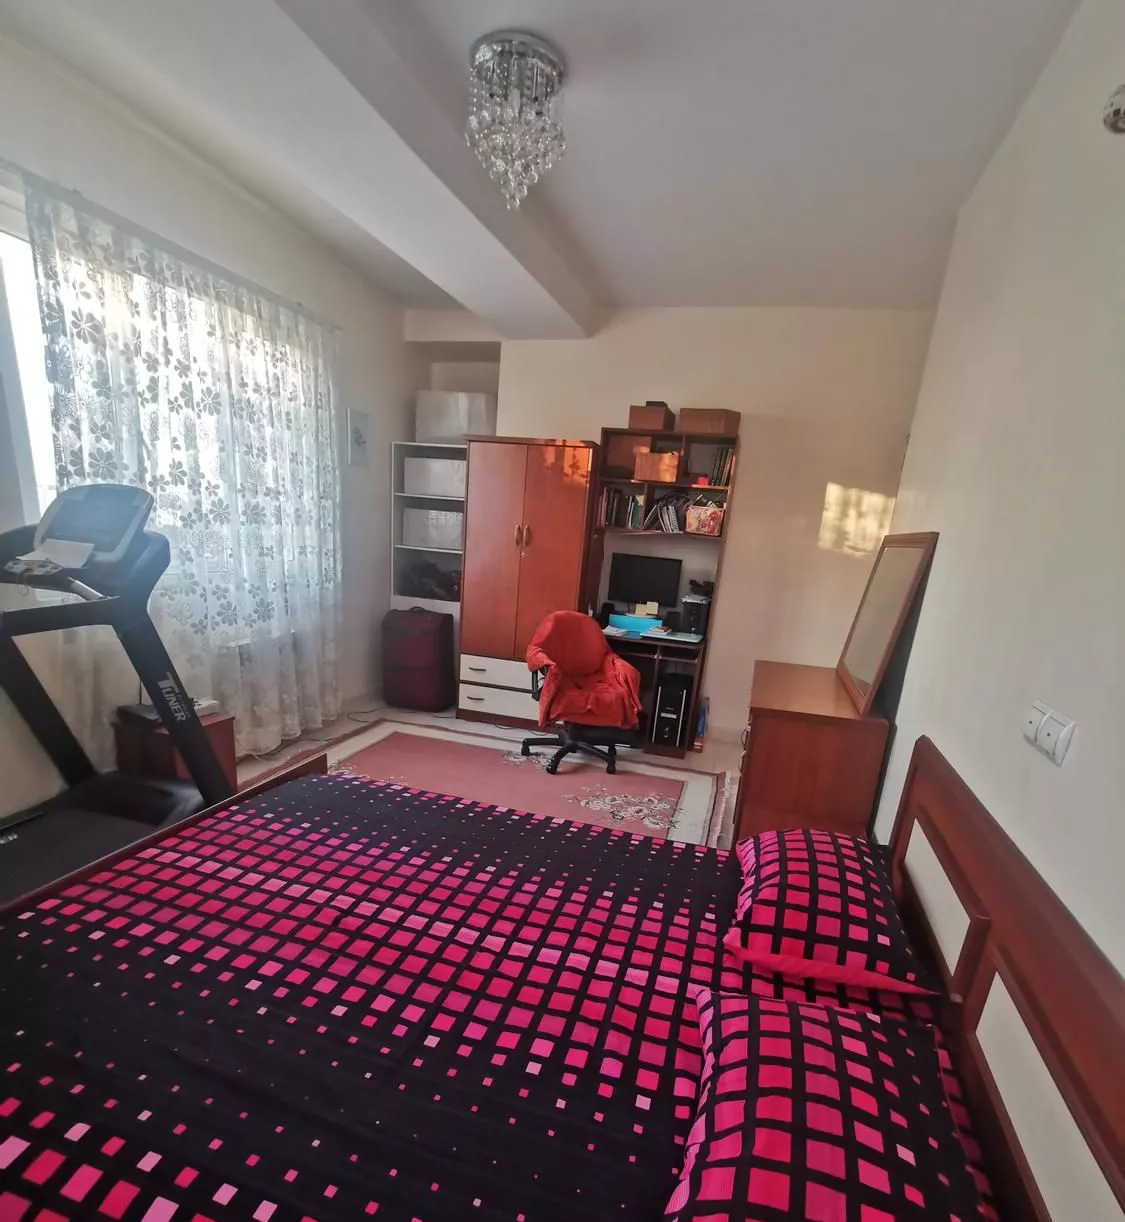 آپارتمان فروشی 145متری در دولت آباد